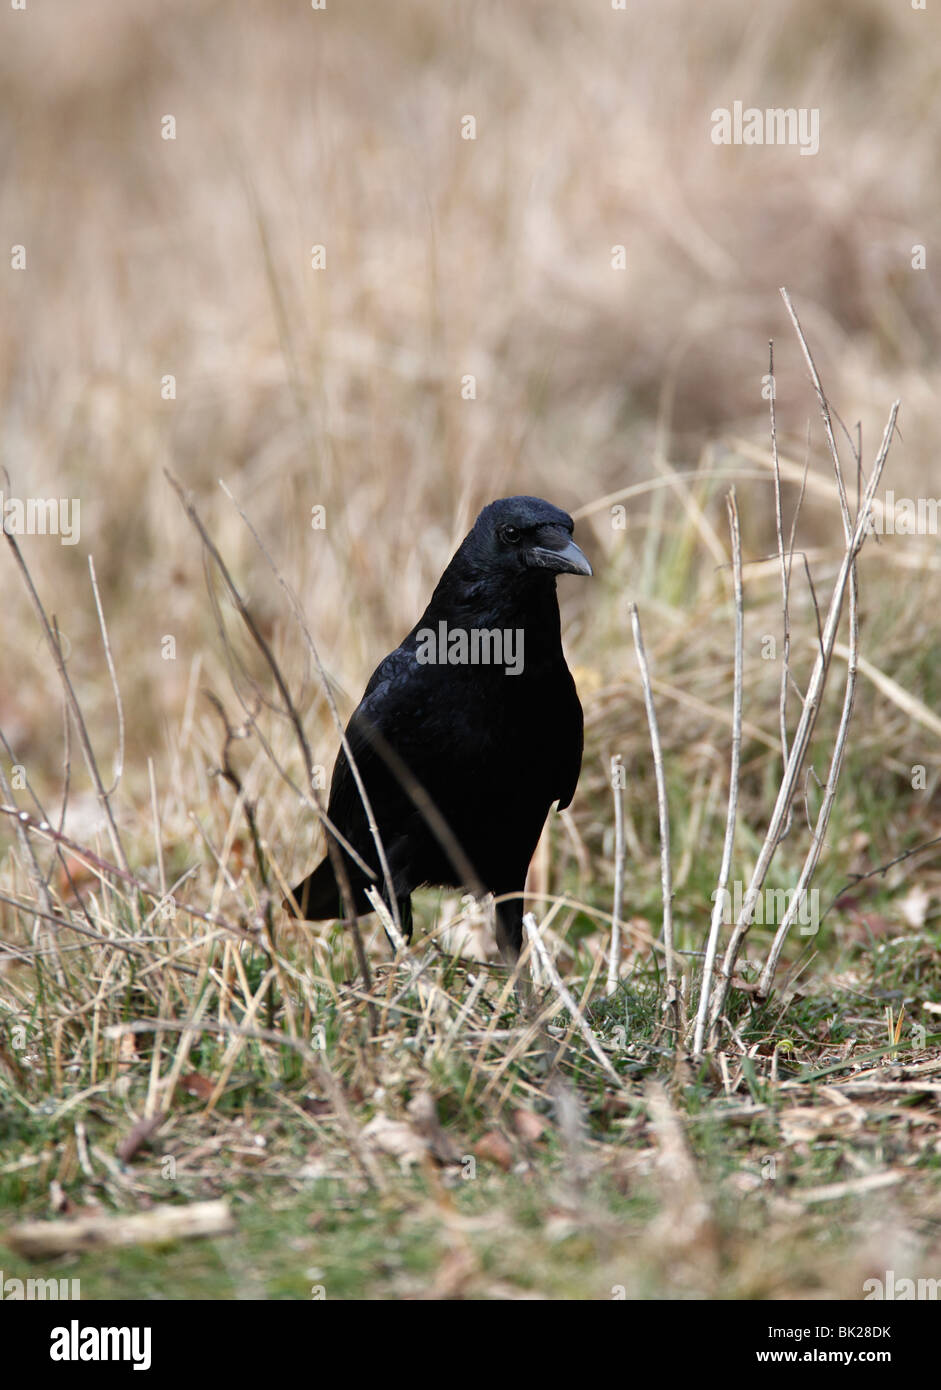 Carrion crow (Corvus corone) in piedi in erba lunga vista frontale Foto Stock